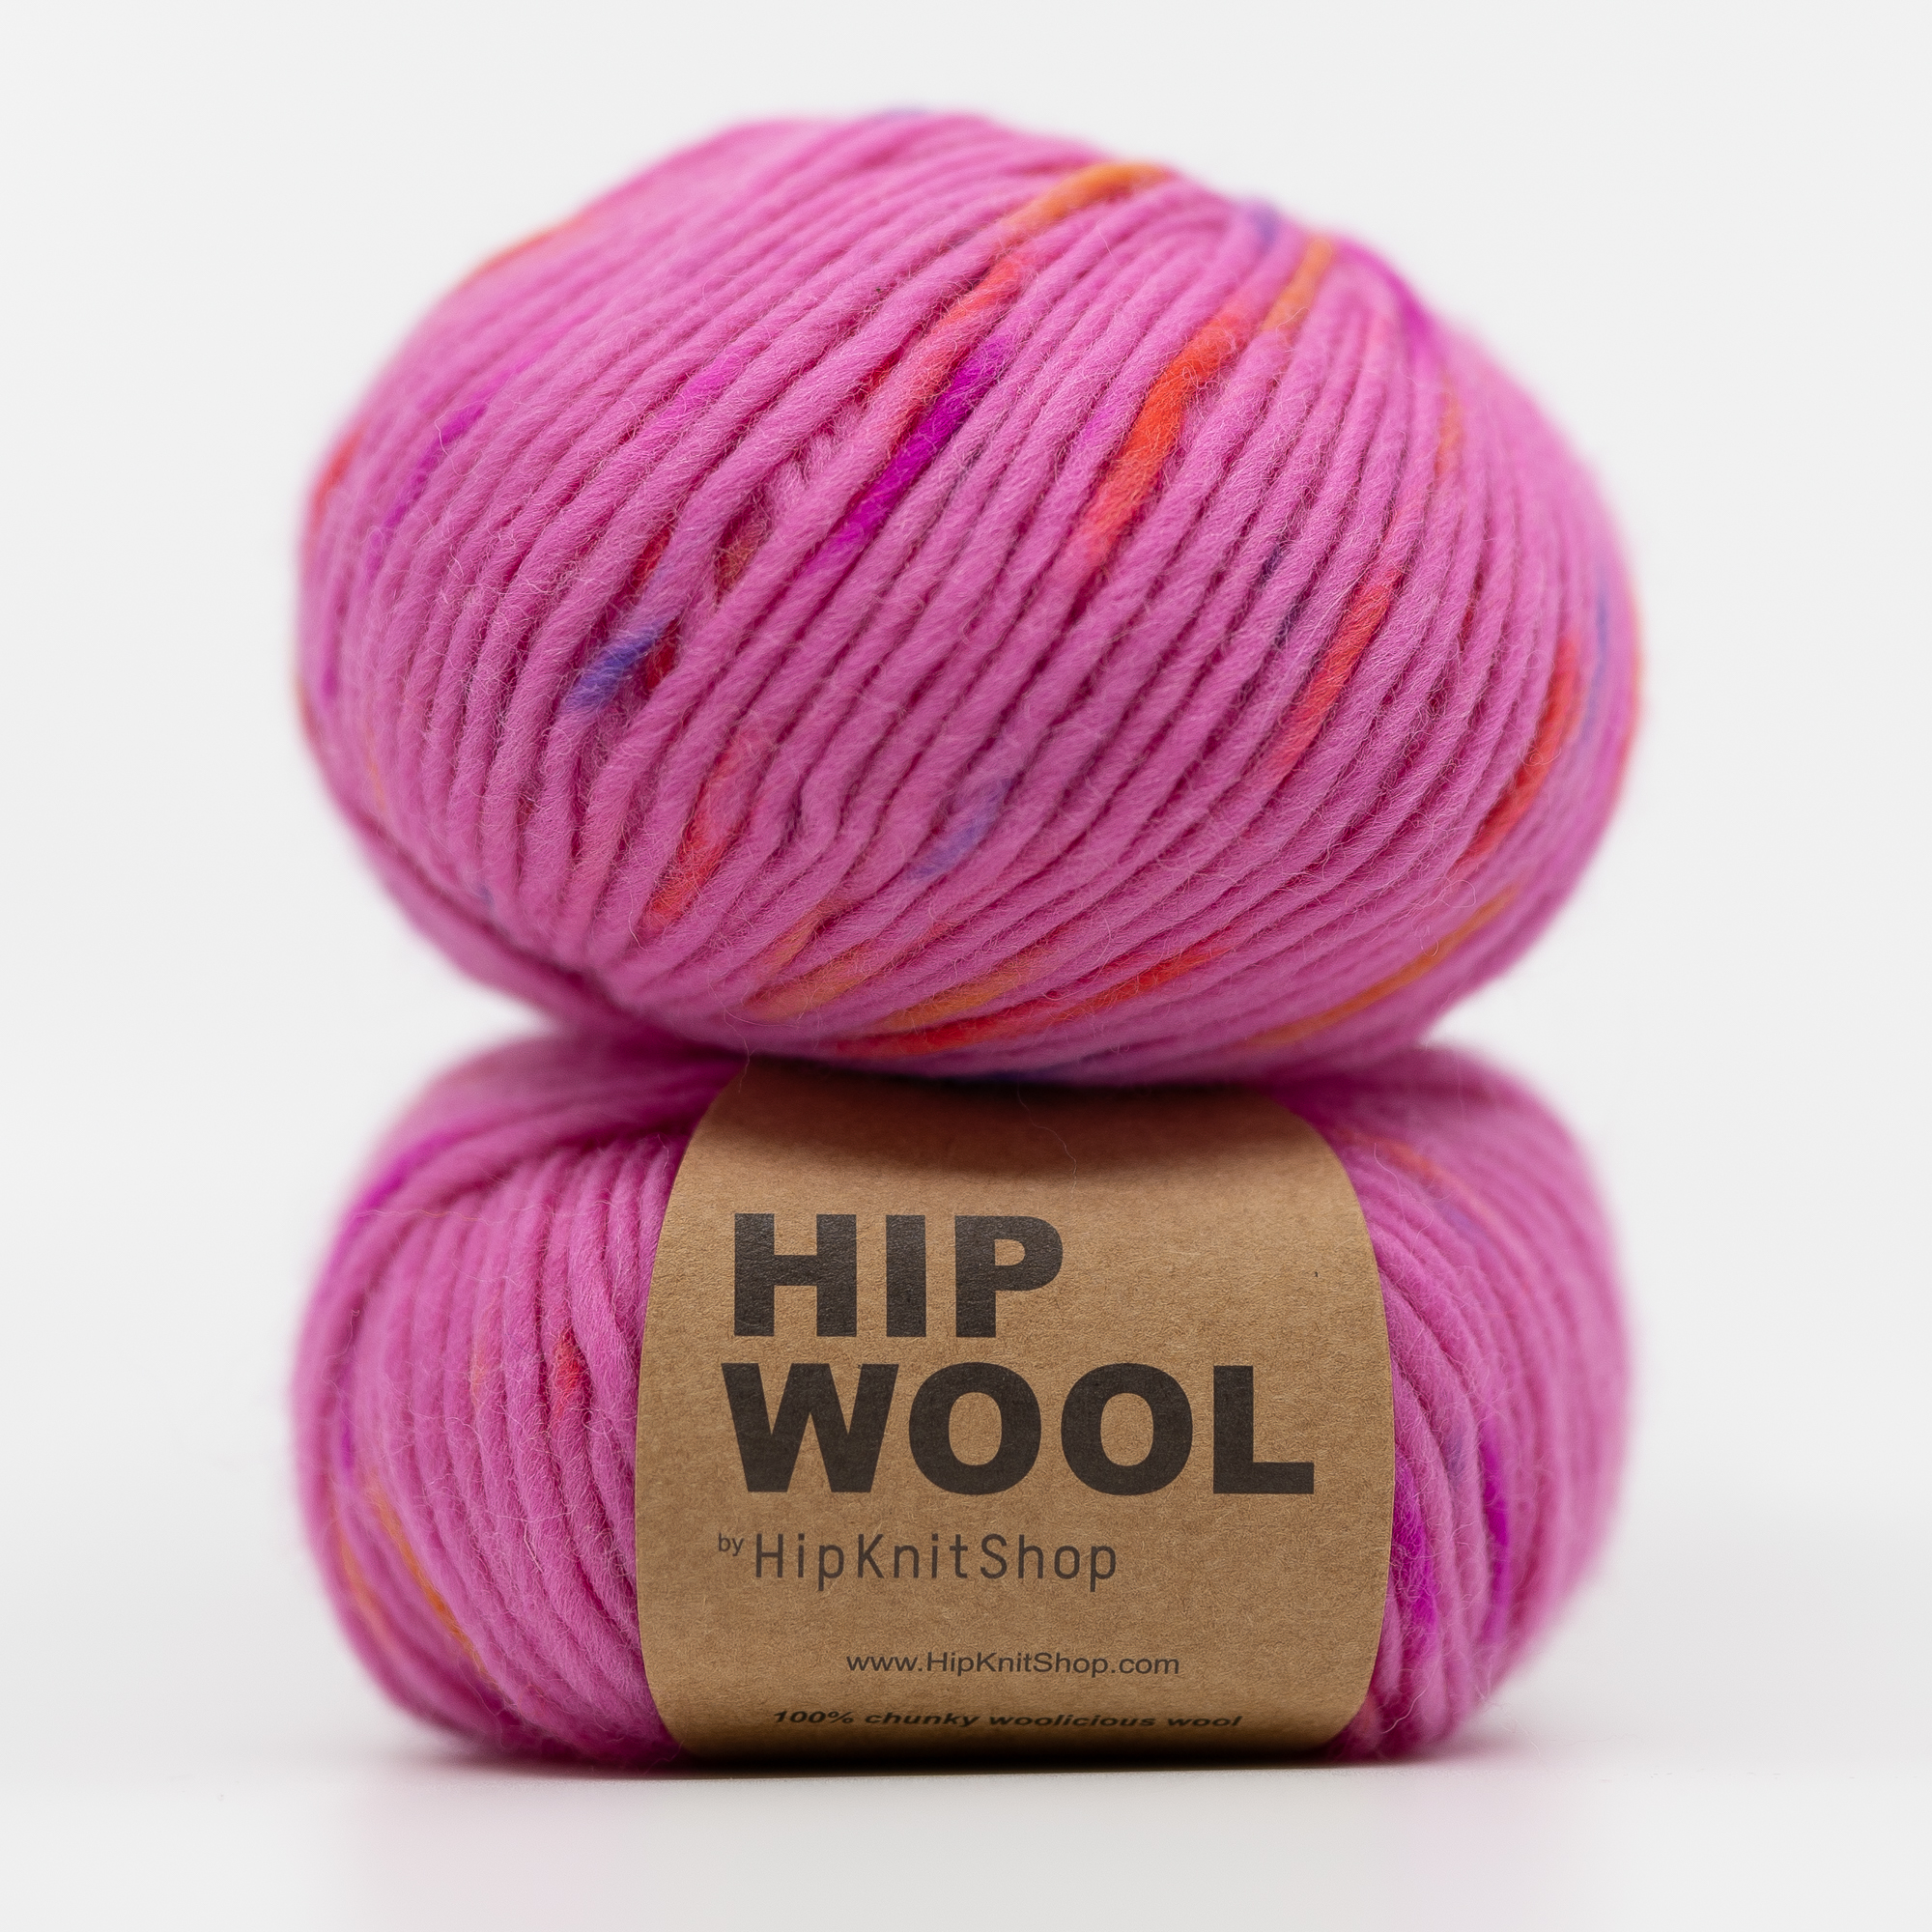  - Flamingo yarn | Pink colorful sprinkle yarn - by HipKnitShop - 30/05/2021